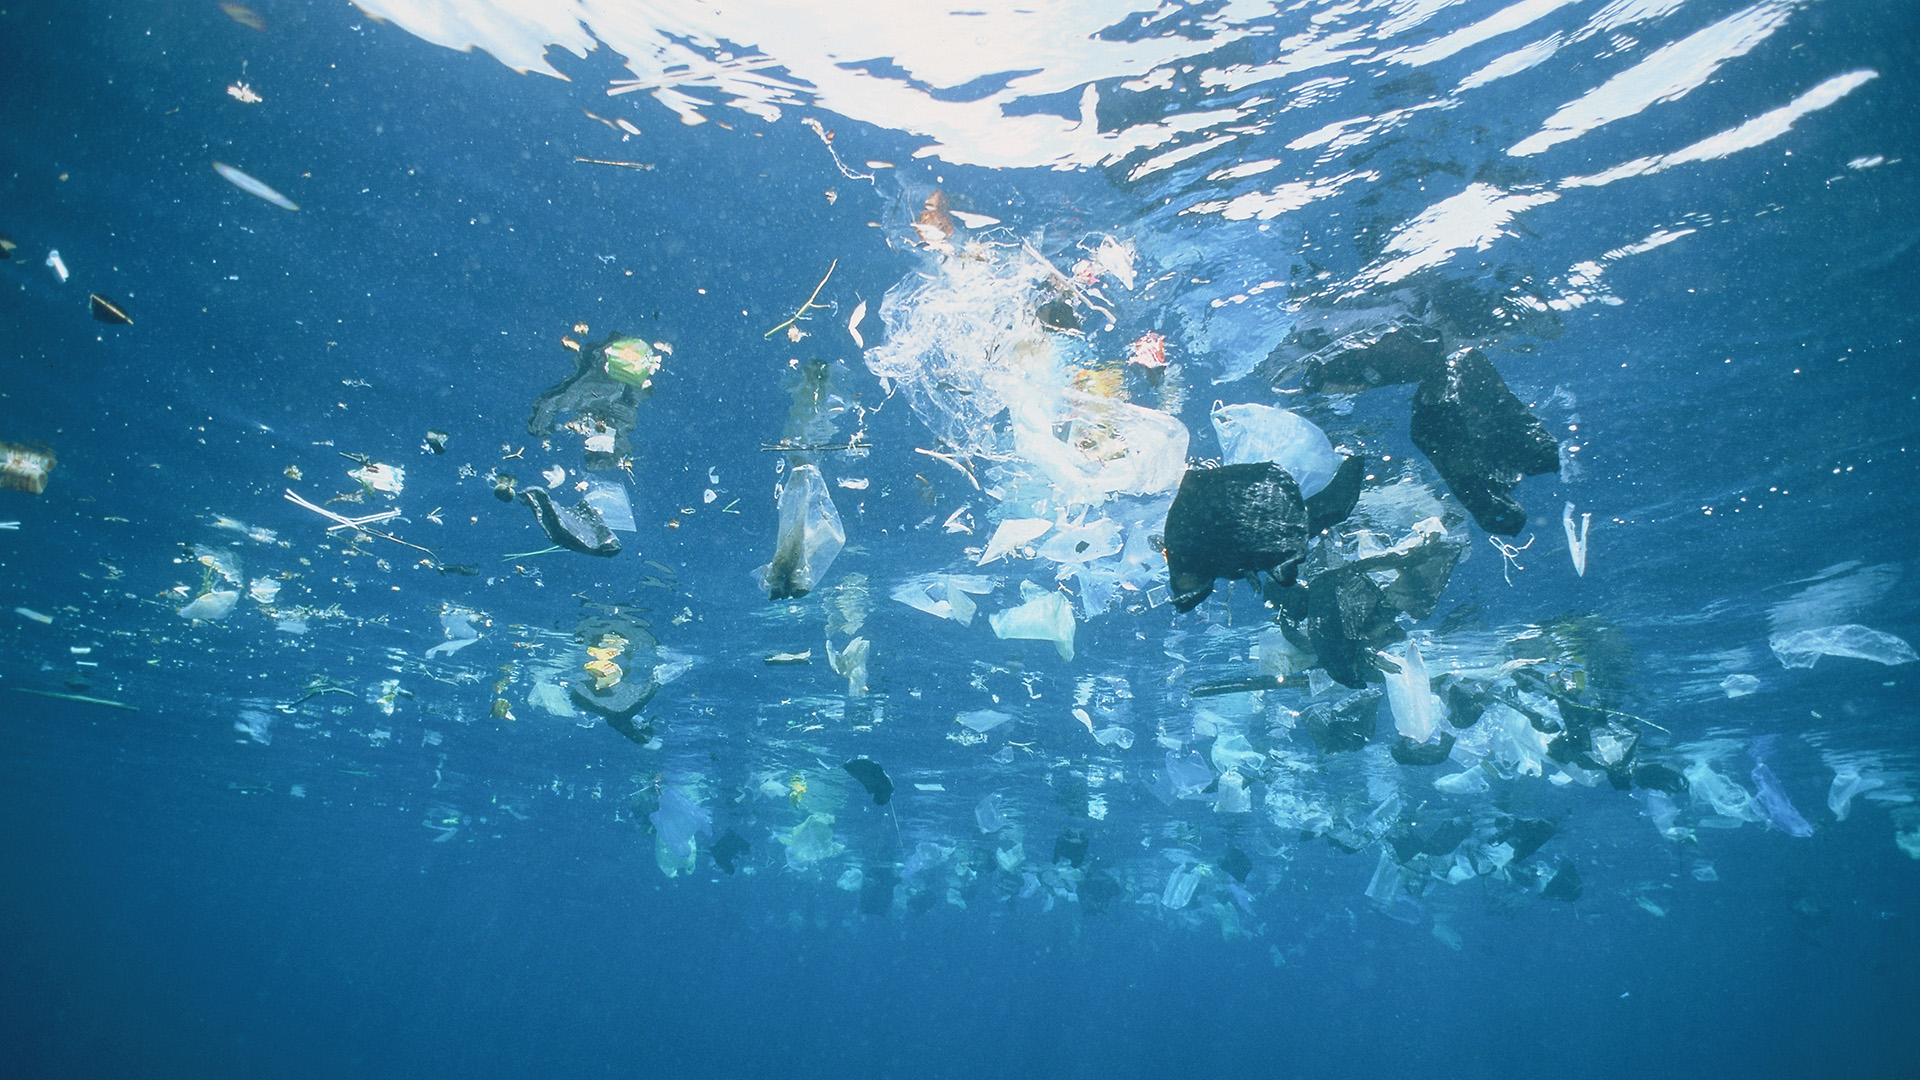 Una investigación reveló que desde 1990 hasta 2005, las cantidades de plástico variaron sin detectarse una tendencia clara, algo que podría deberse a las políticas que se implementaron durante ese período. (Getty Images)